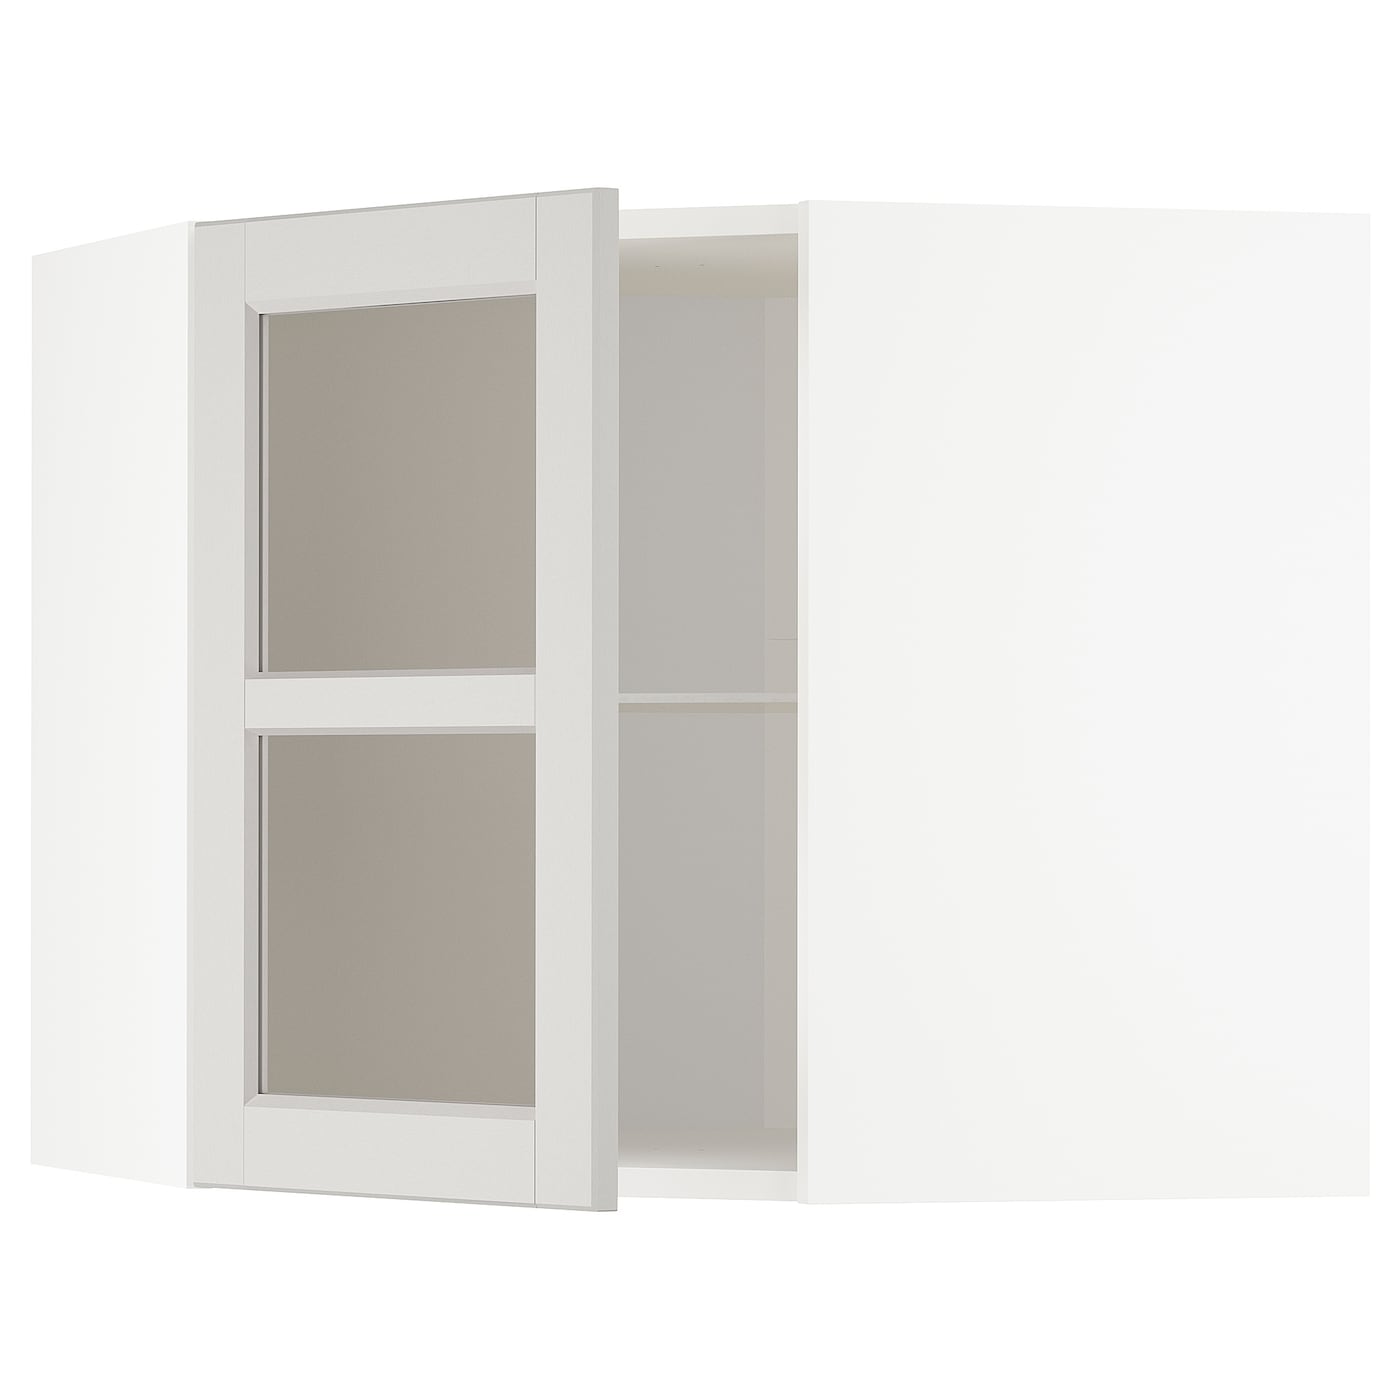 Шкаф  - METOD IKEA/ МЕТОД ИКЕА, 68х60 см, белый/светло-бежевый